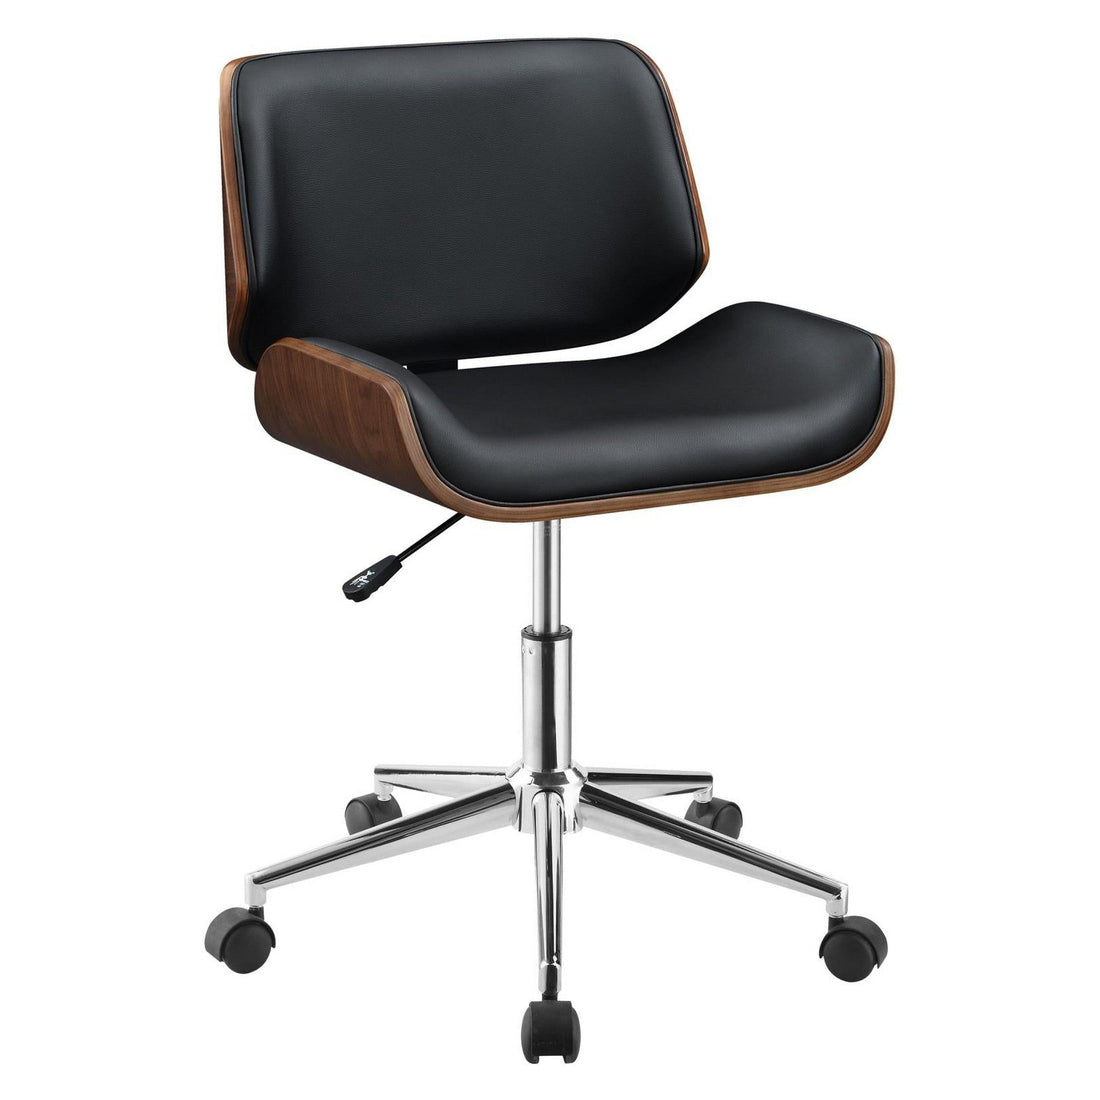 Addington Adjustable Height Office Chair Black and Chrome 800612